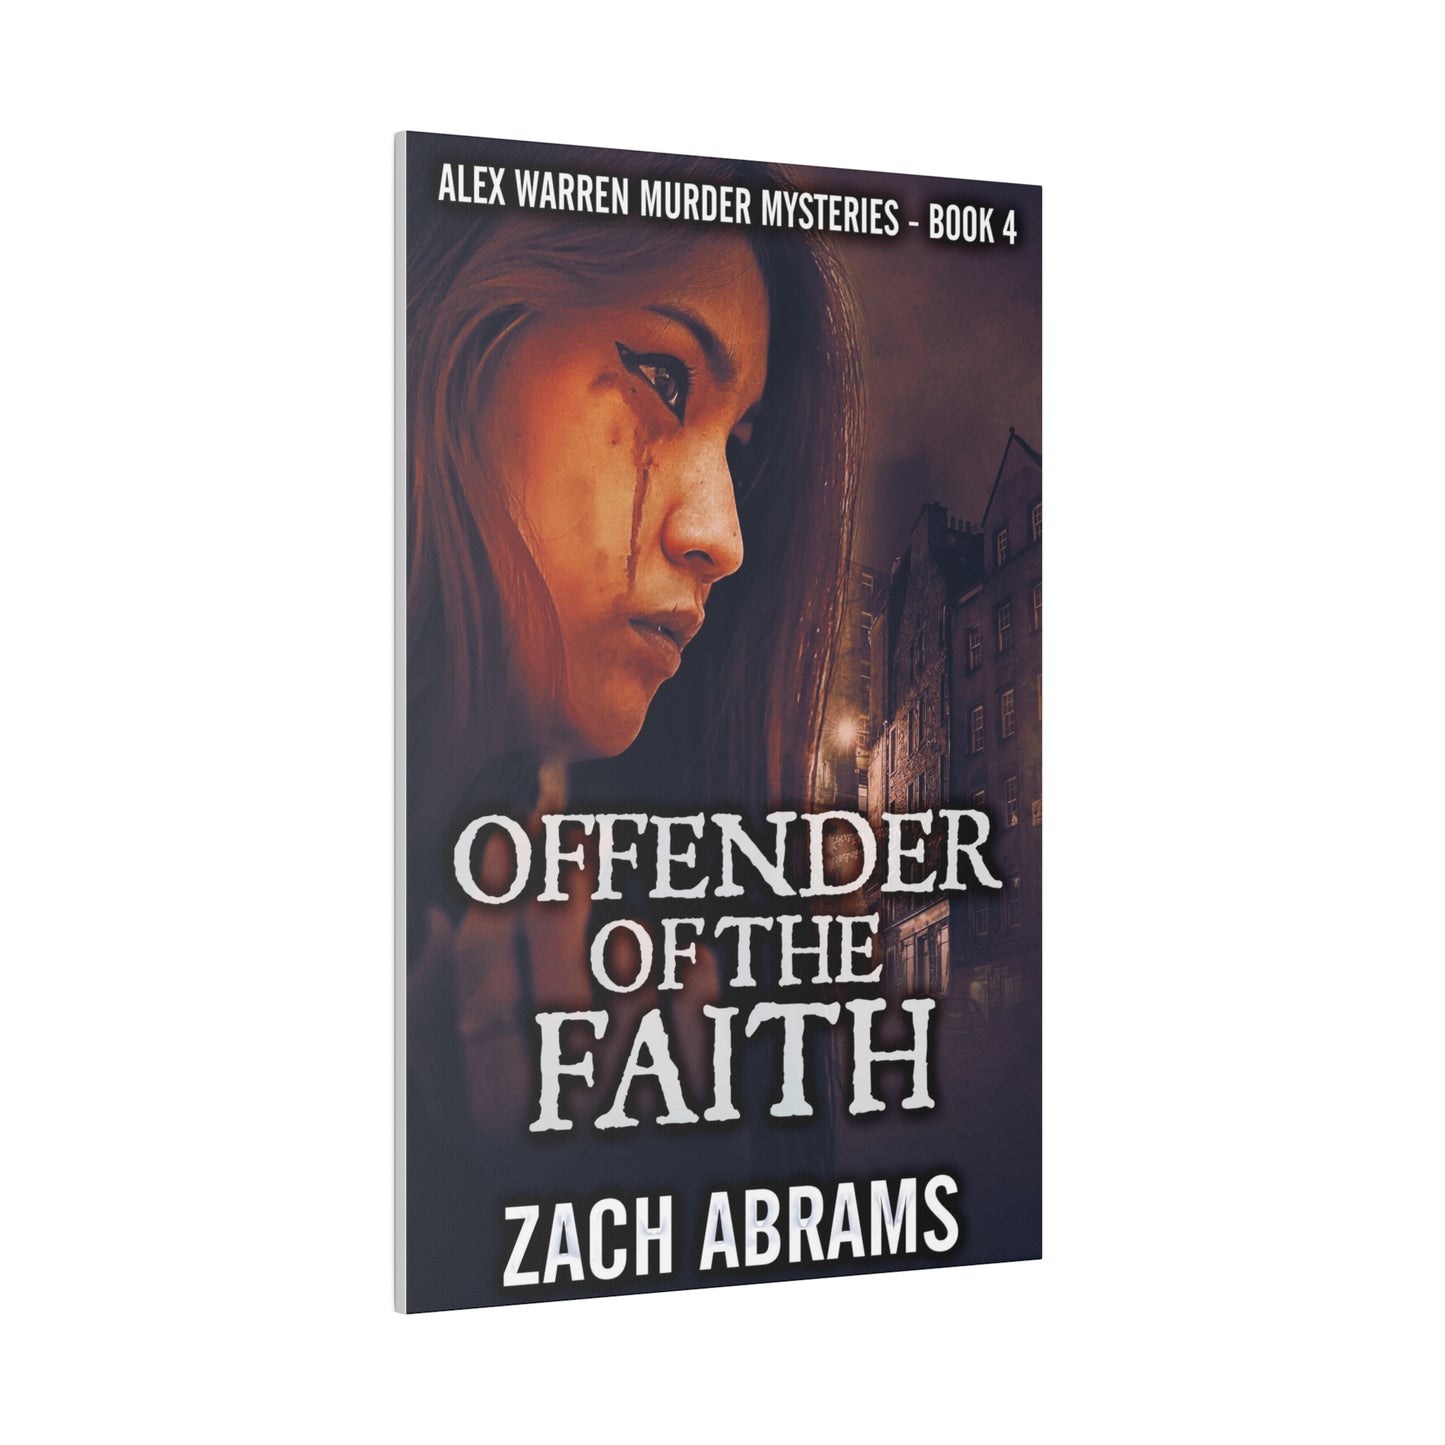 Offender Of The Faith - Canvas